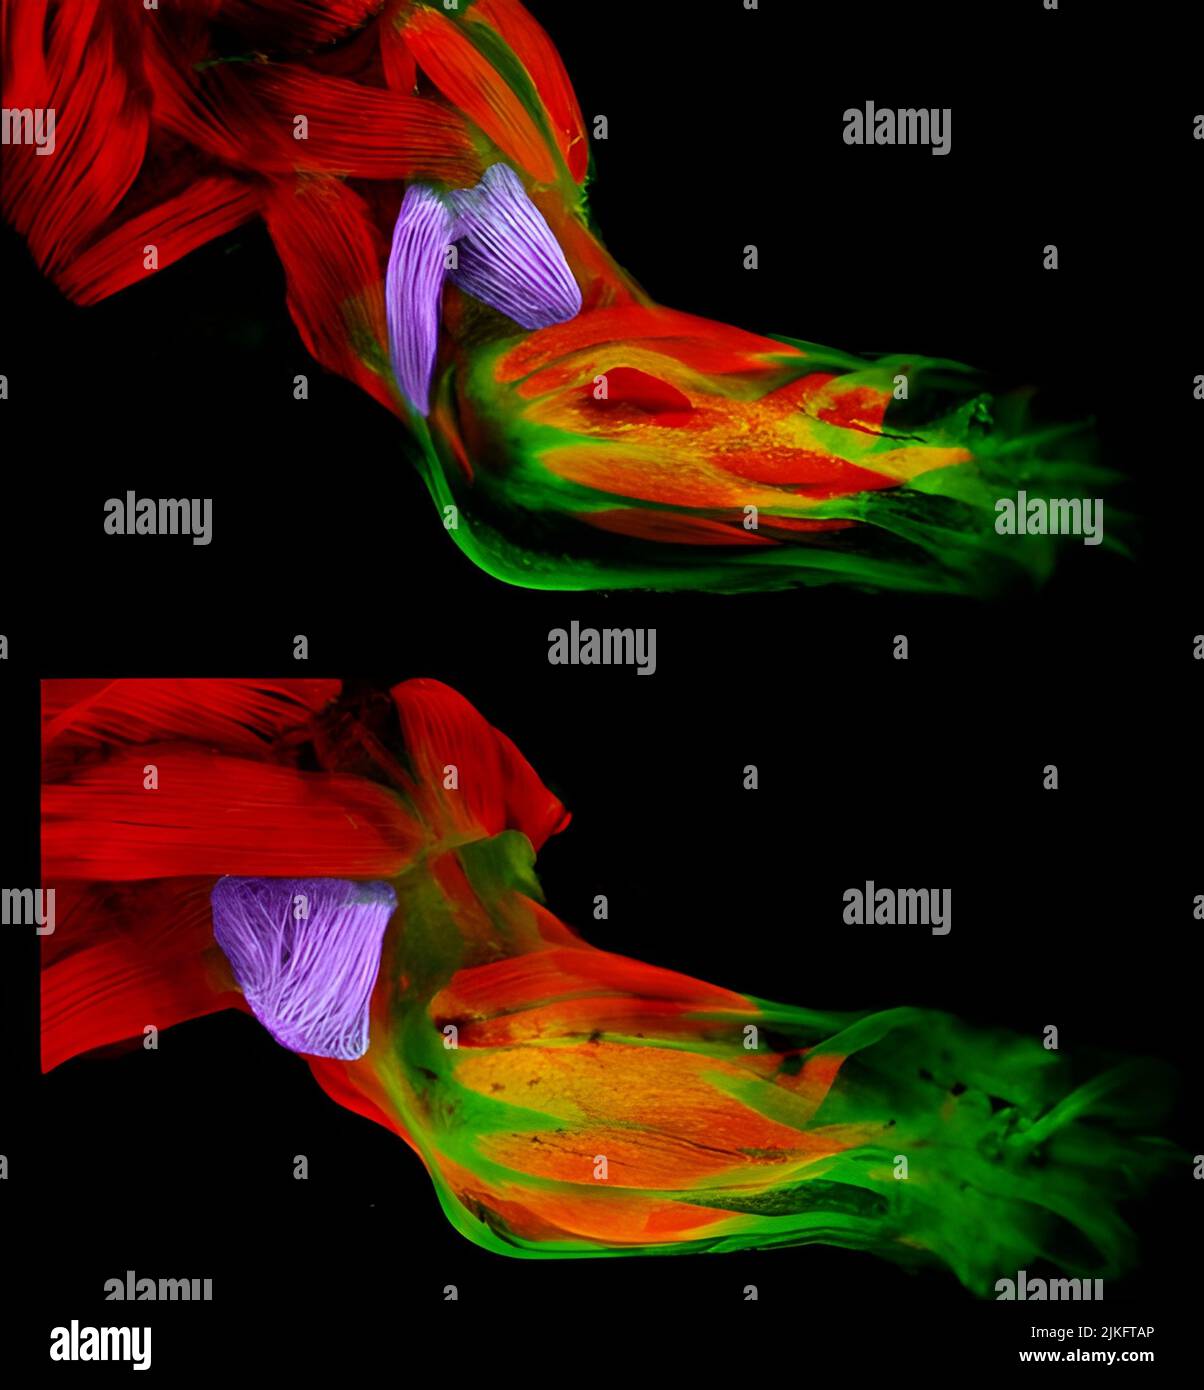 In diesen Bildern aus Gabrielle Kardons NIH-unterstütztem Labor an der University of Utah, Salt Lake City, sehen Sie die Entwicklung der Vordergliedmaßen eines gesunden Mausstamms (oben) im Vergleich zu einem mutierten Mausstamm mit einem steifen, abnormalen Gang (unten). Stockfoto